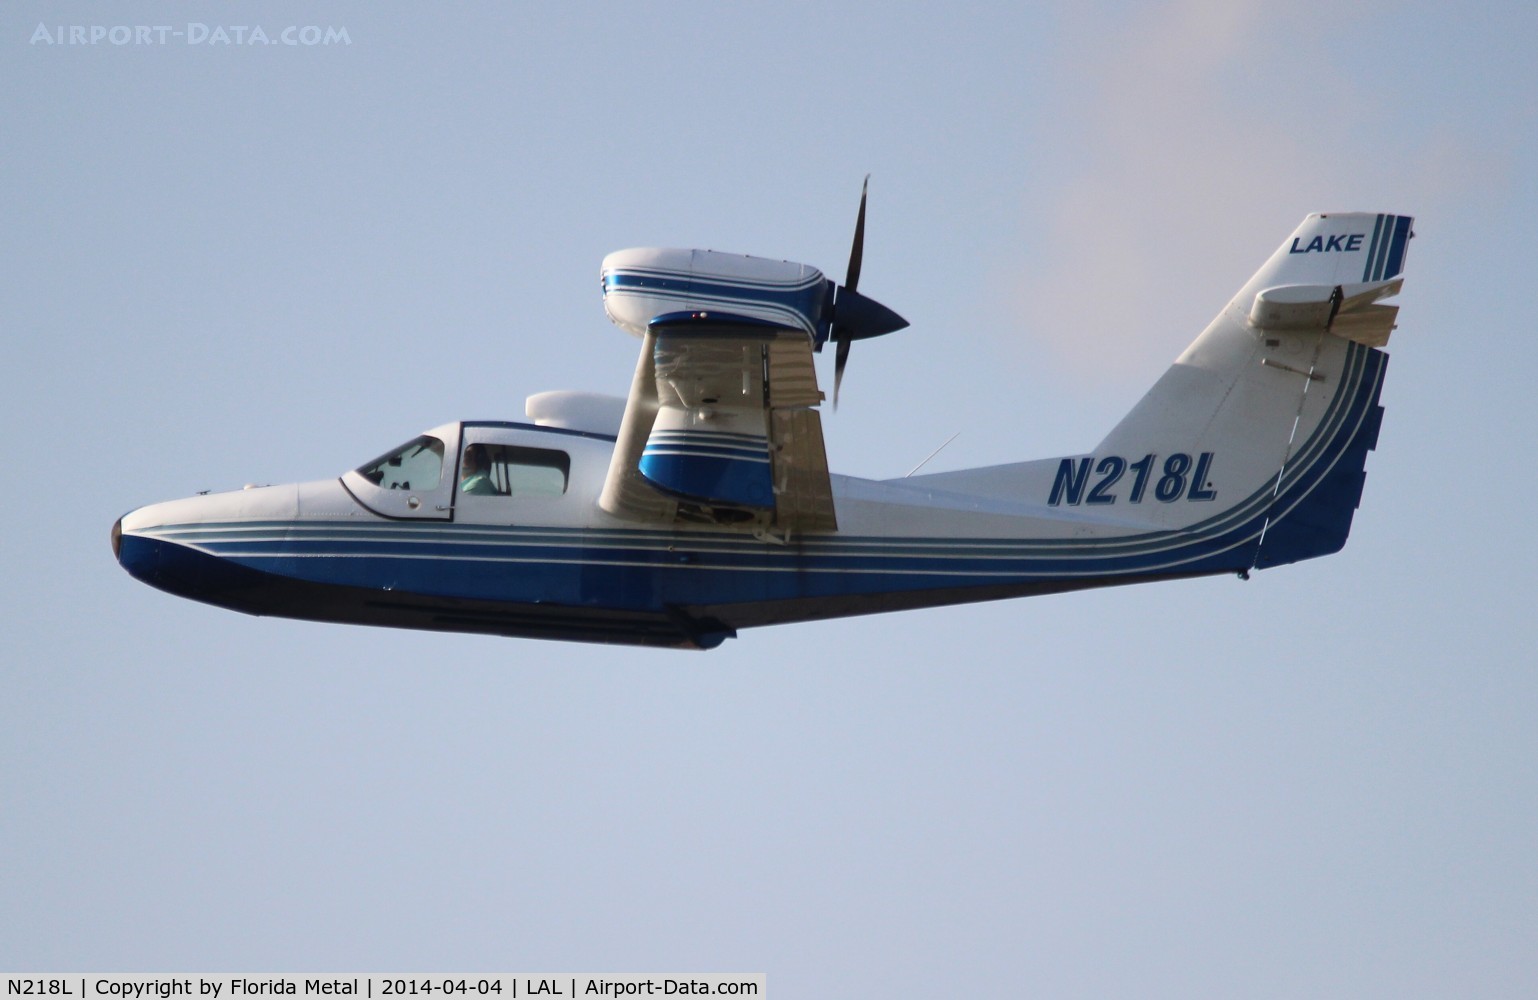 N218L, Aerofab Inc Lake LA-250 C/N 68, Lake LA-250